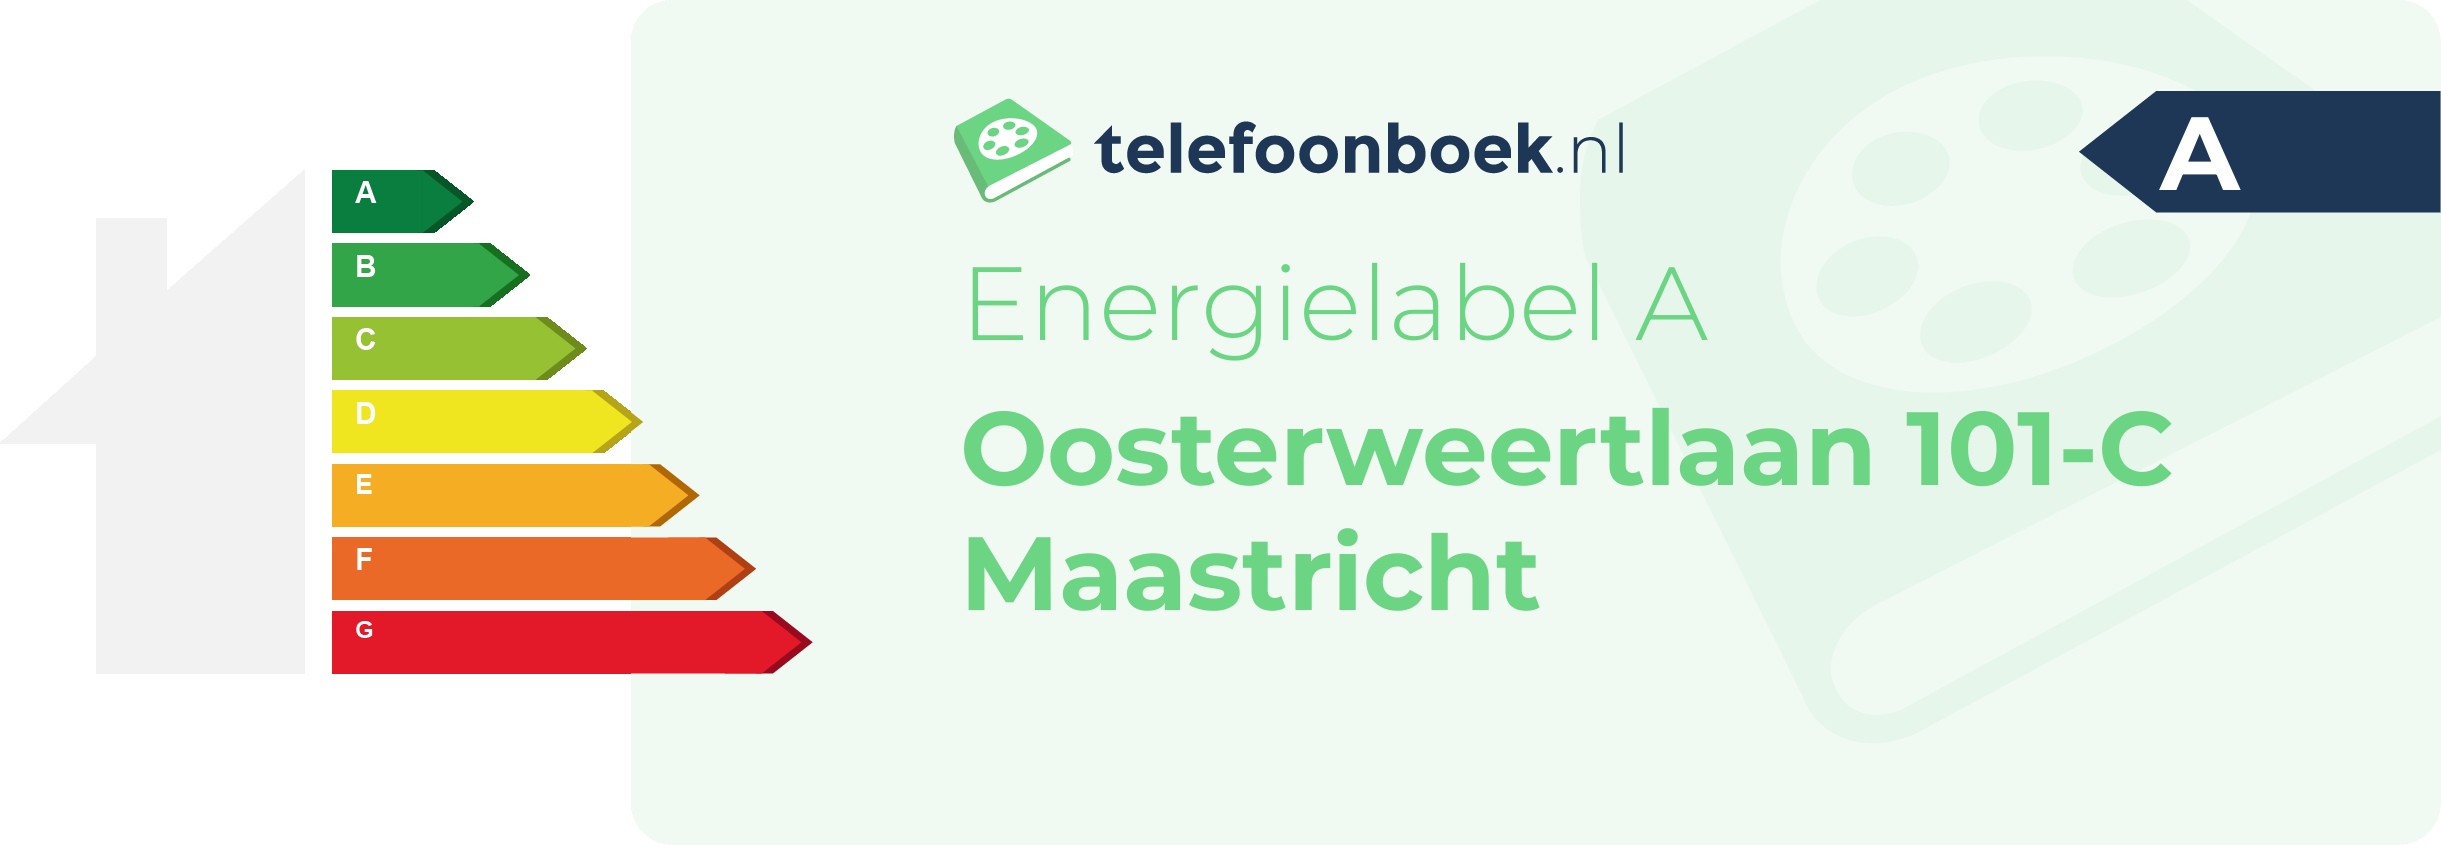 Energielabel Oosterweertlaan 101-C Maastricht